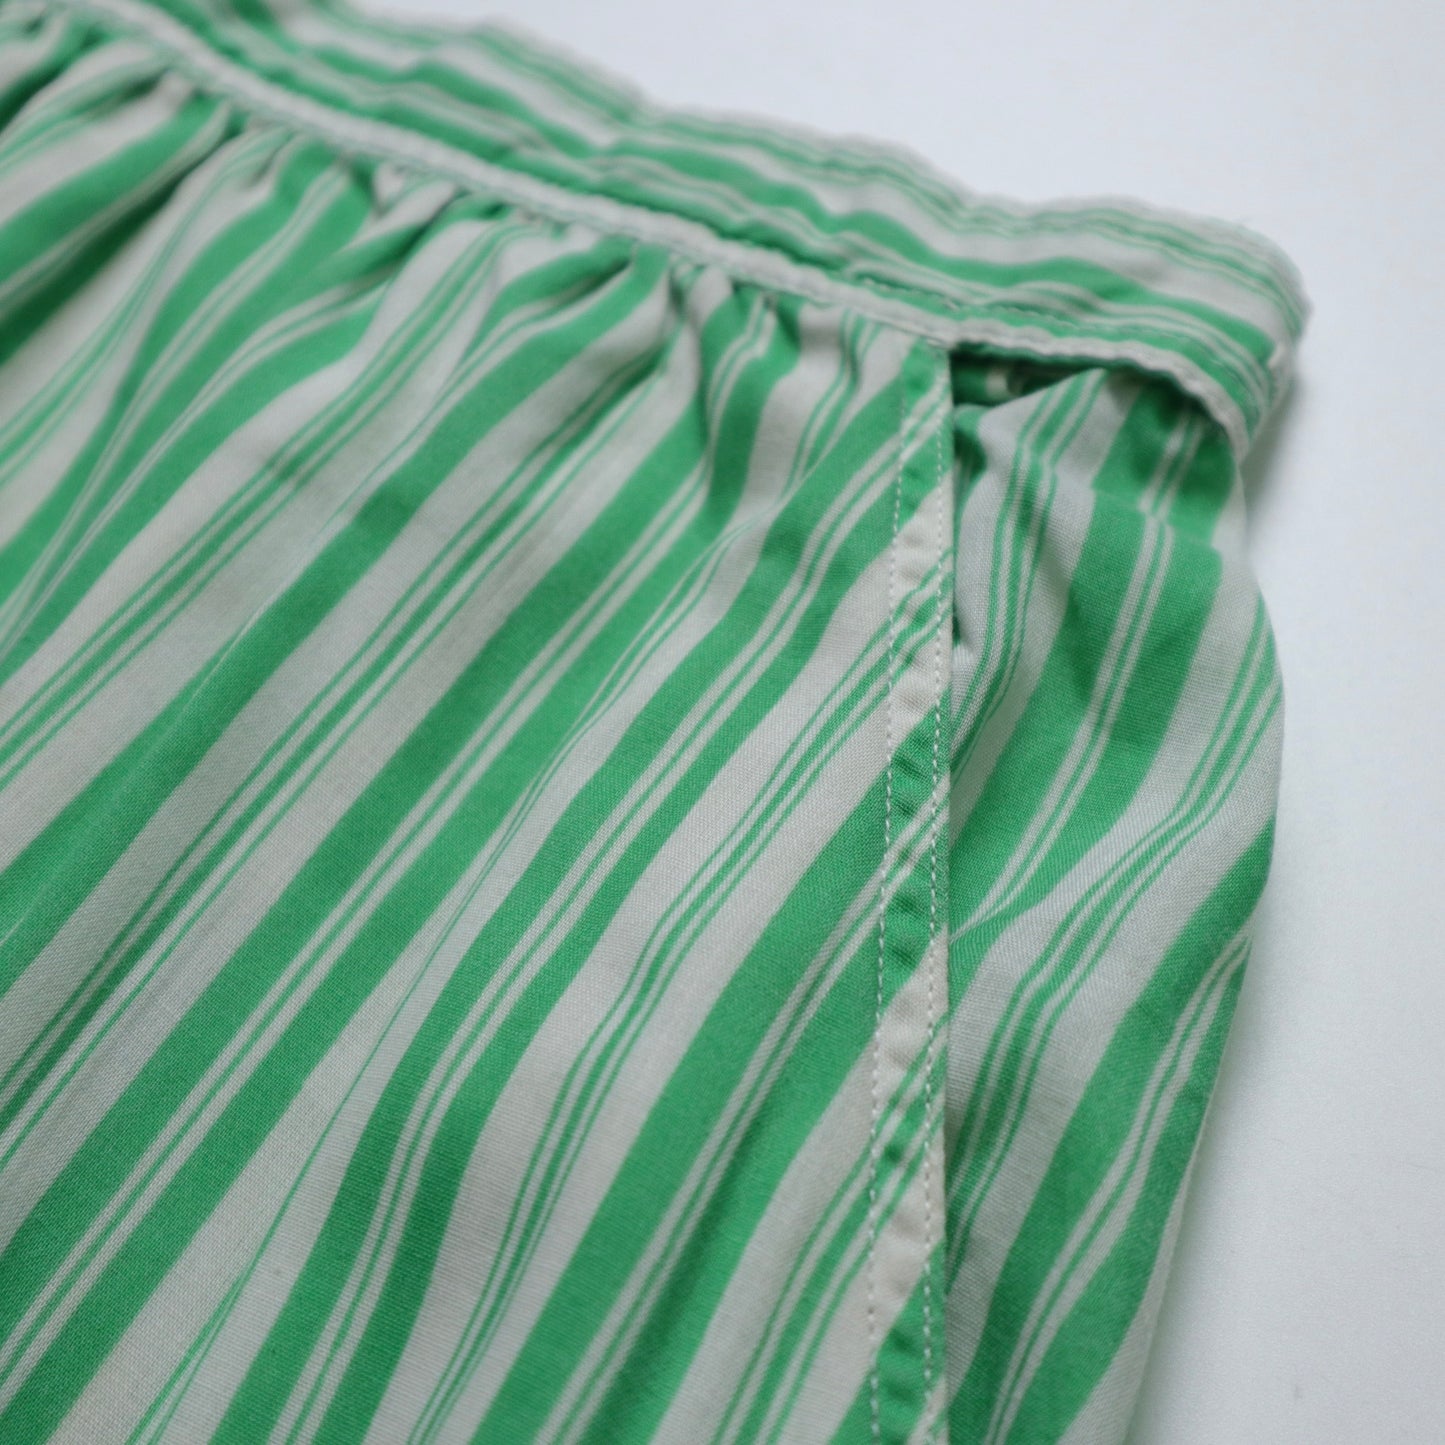 1970s 美國製 綠白條紋半身裙 ILGWU/Union made